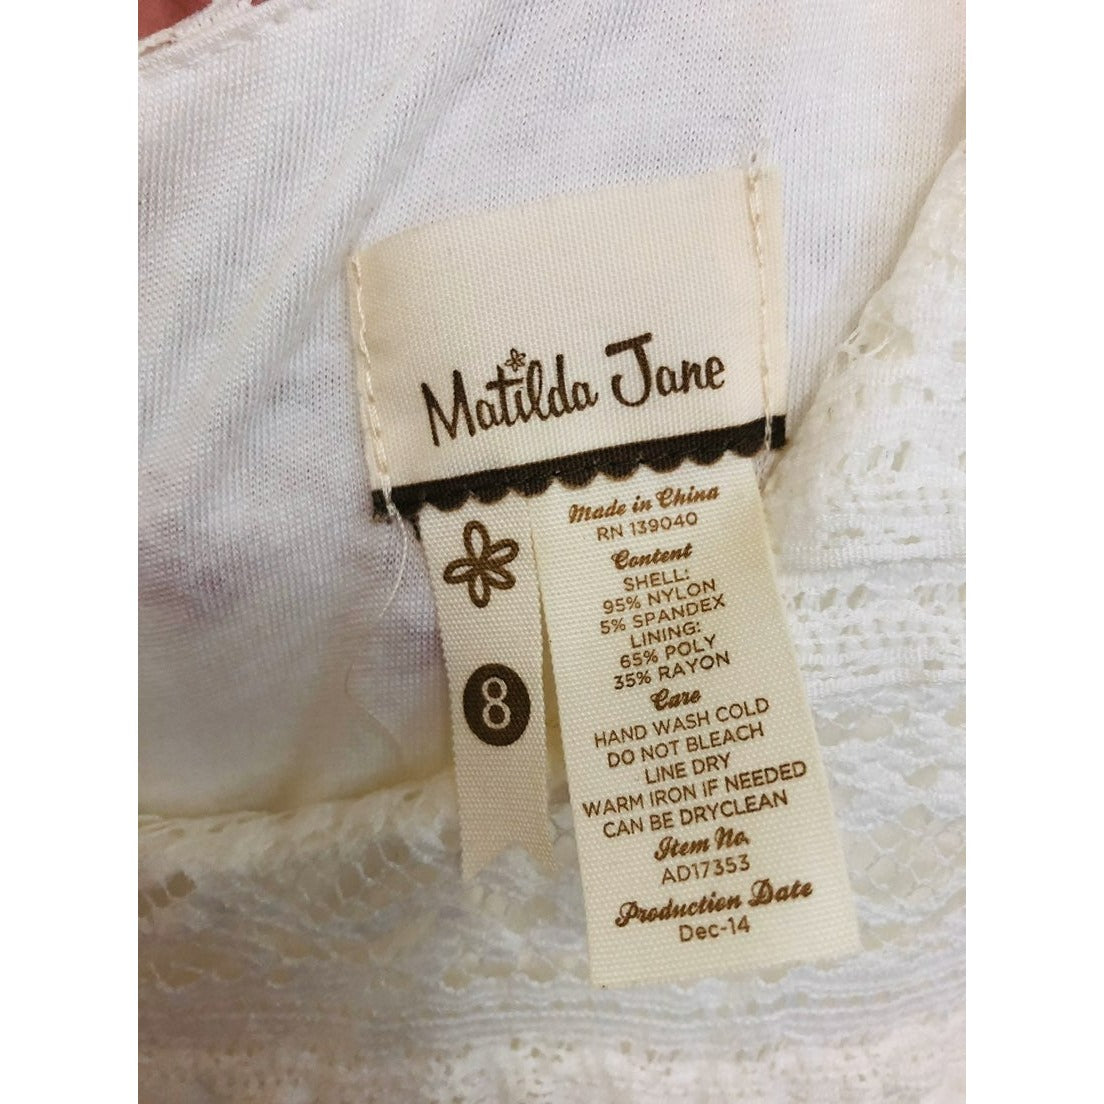 Matilda Jane white lace Smile Sweetly women's dress size 8